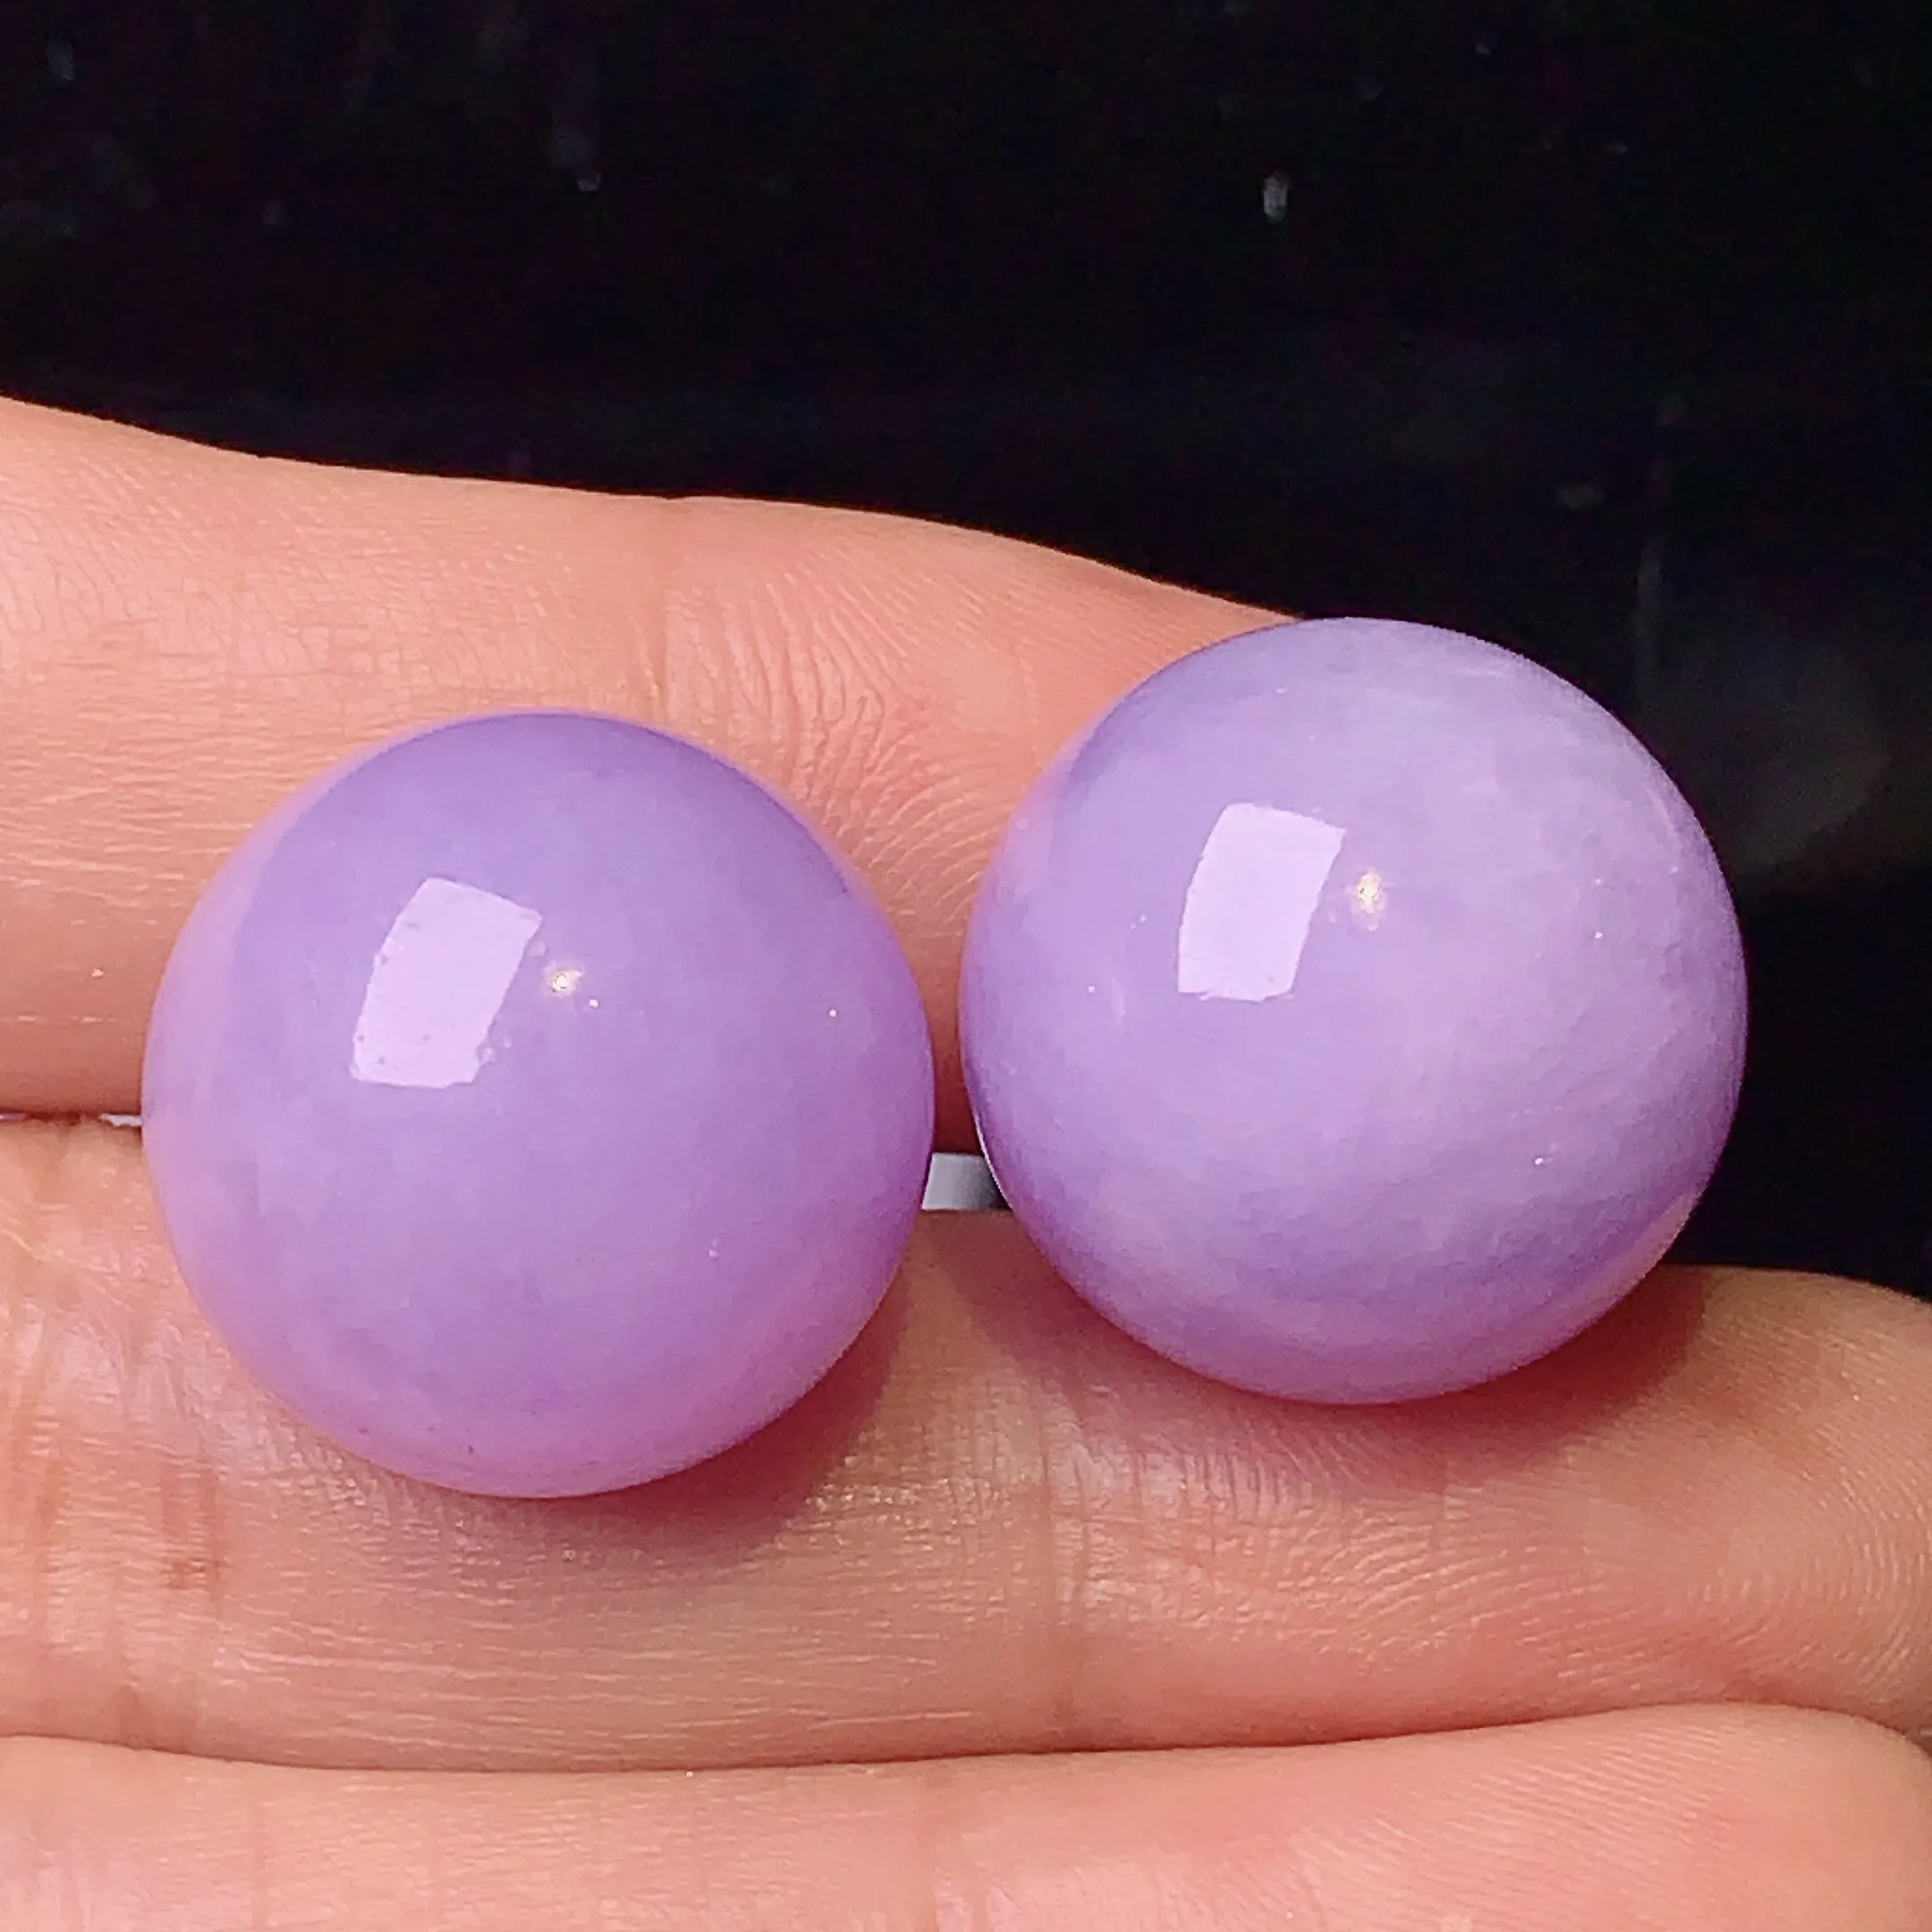 紫罗兰圆珠一对 玉质细腻 色泽清新艳丽 整体尺寸17